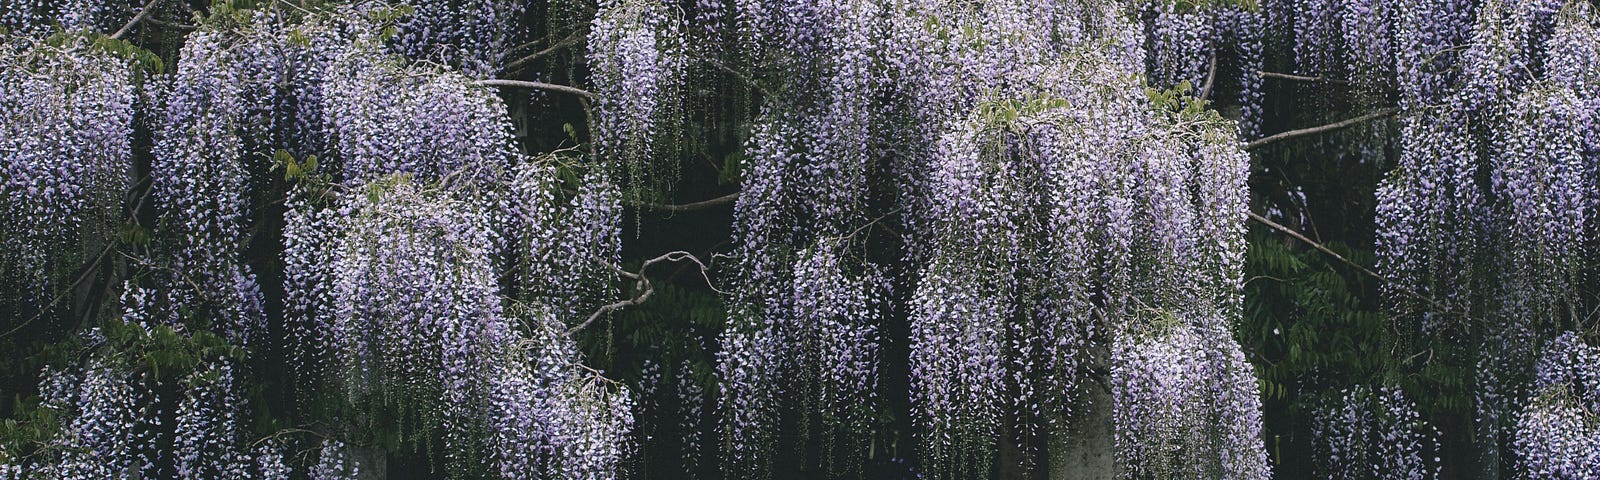 cascading wisteria